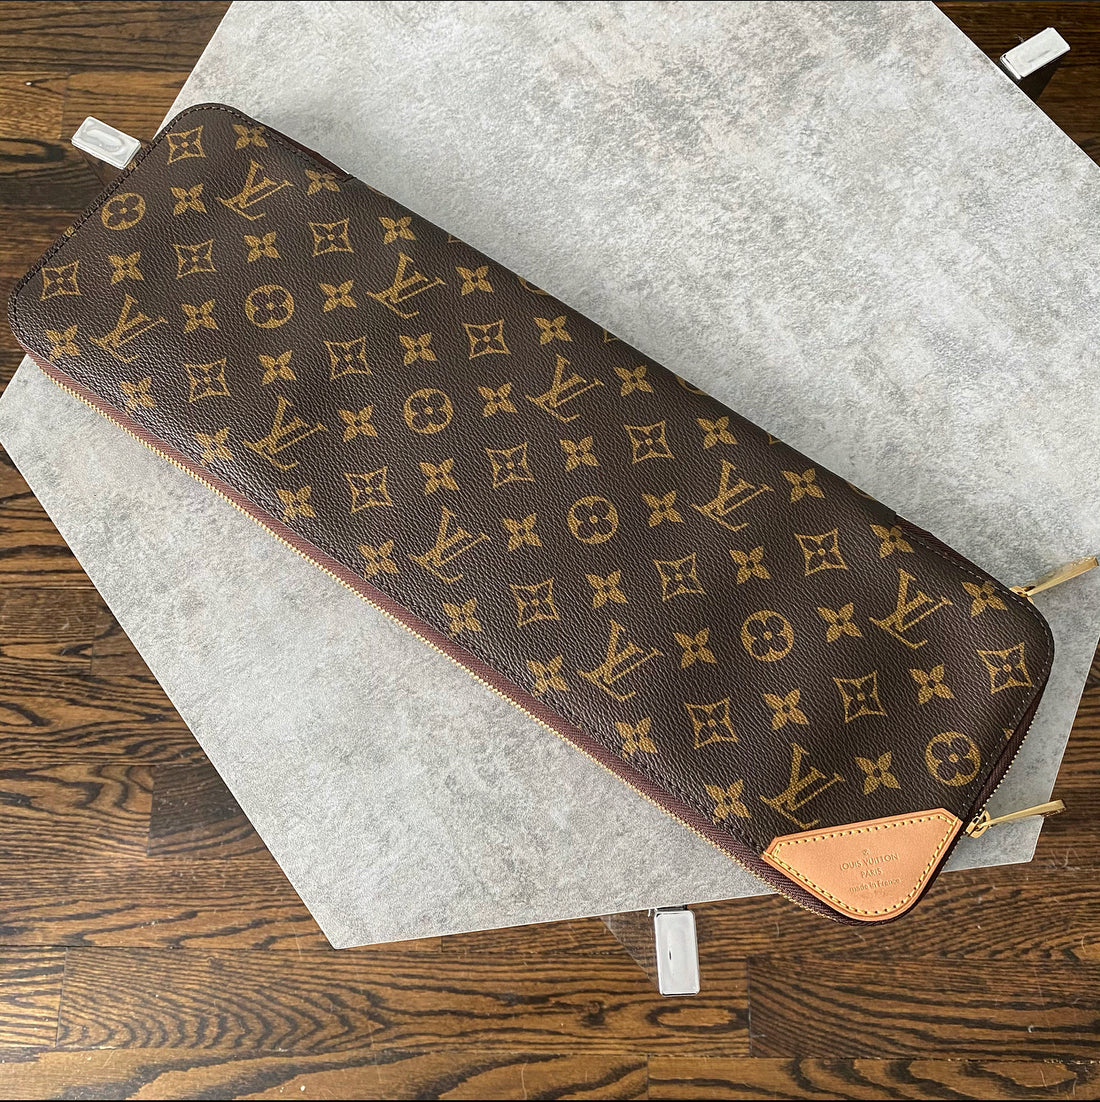 Louis Vuitton Etui 5 Cravates Monogram Canvas Tie Case